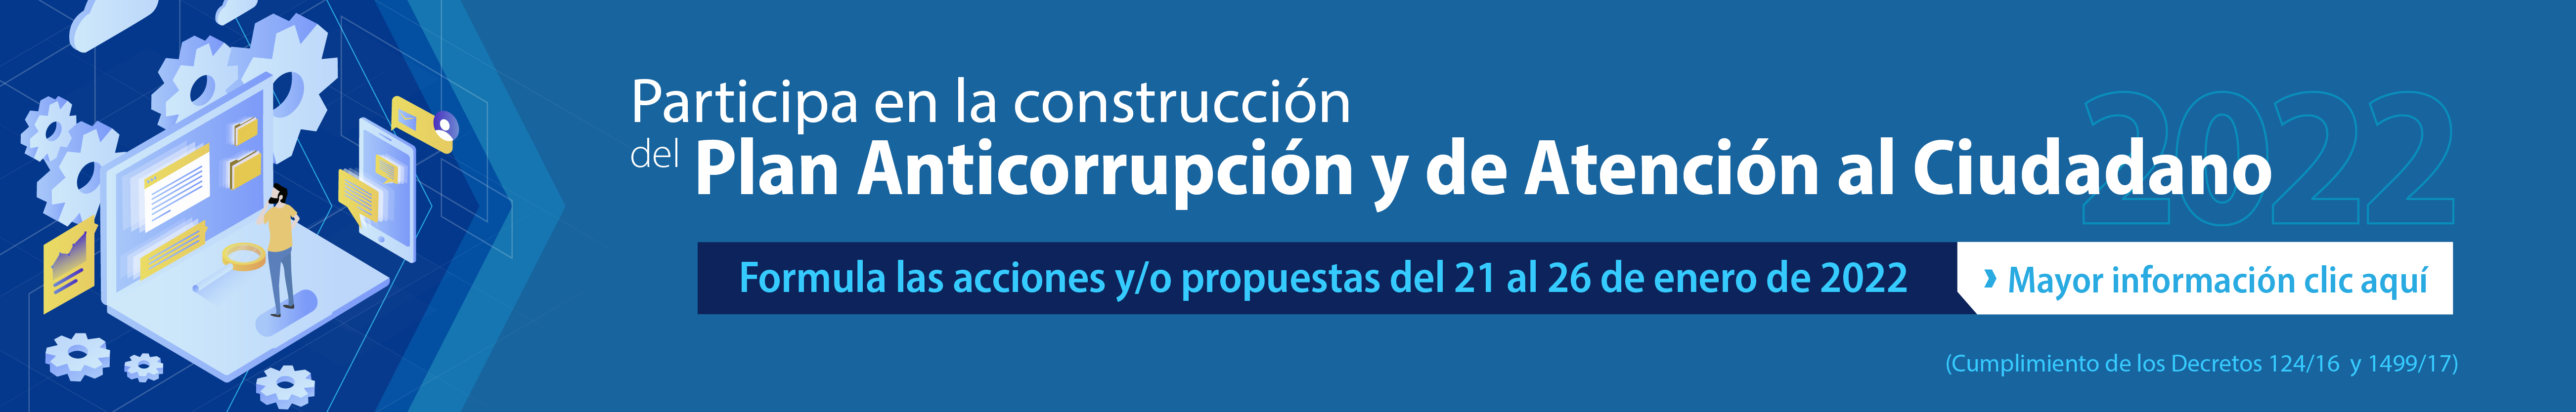 Construcción Plan Anticorrupción y de Atención al Ciudadano 2022